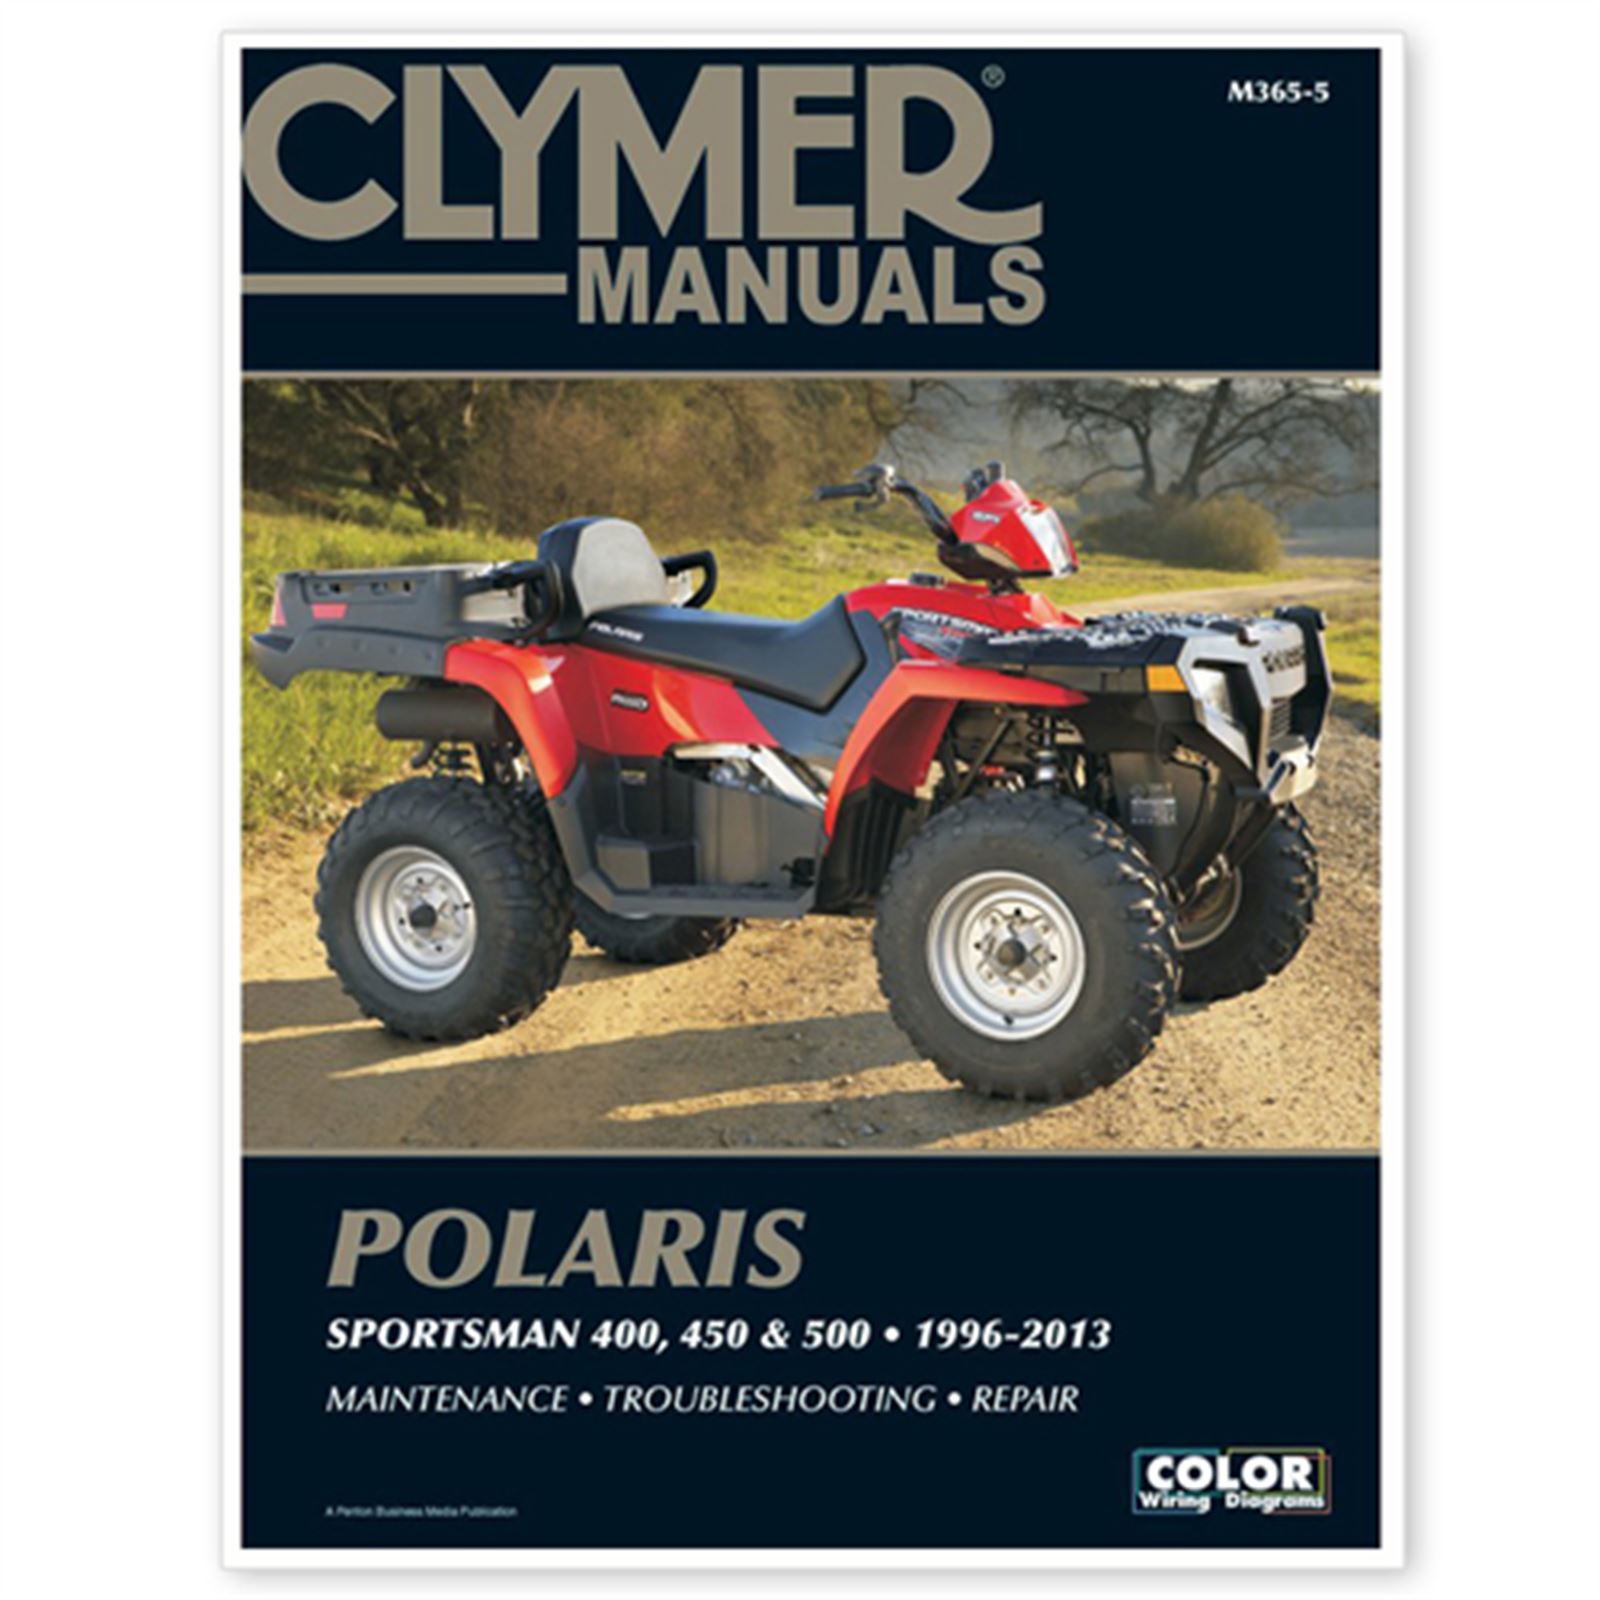 Clymer Explorer Manual Polaris Sportsman 400, 450 & 500